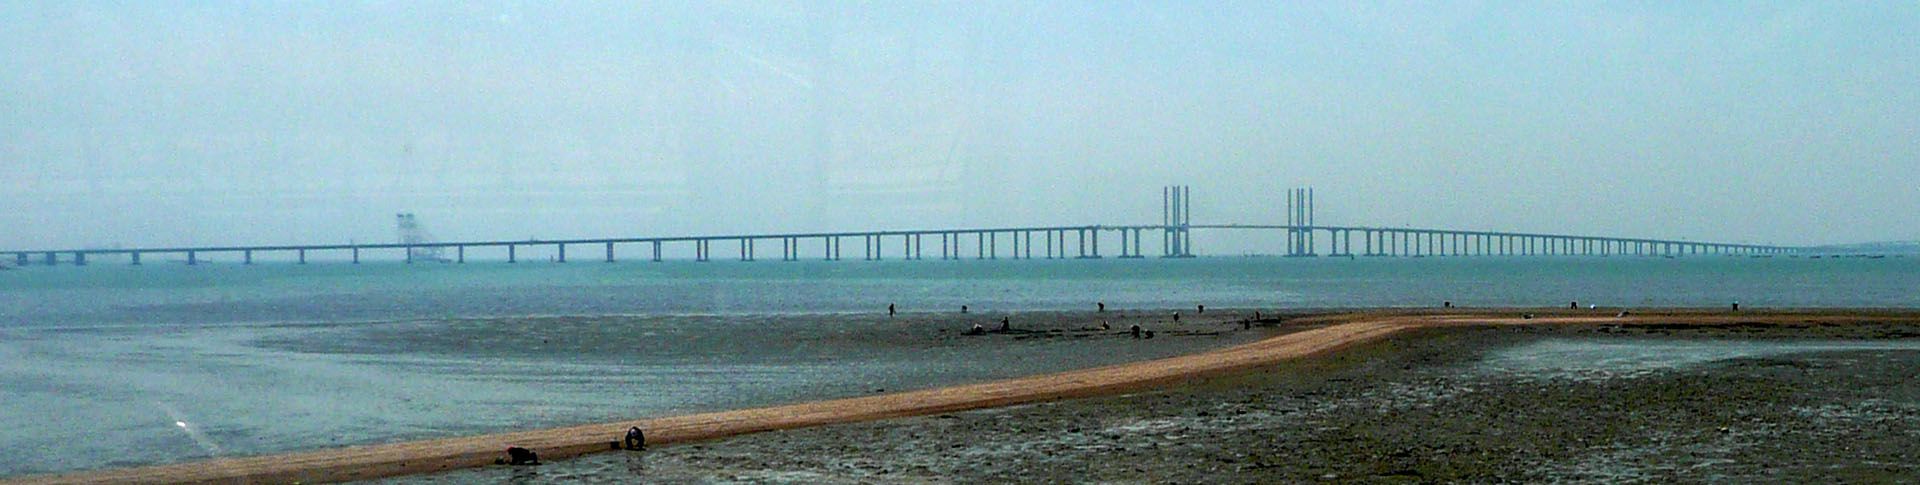 Inaugurado en 2011, el Puente de la Bahía de Qingdao agiliza el tránsito entre Qingdao y Huangdao, impulsando el desarrollo regional.